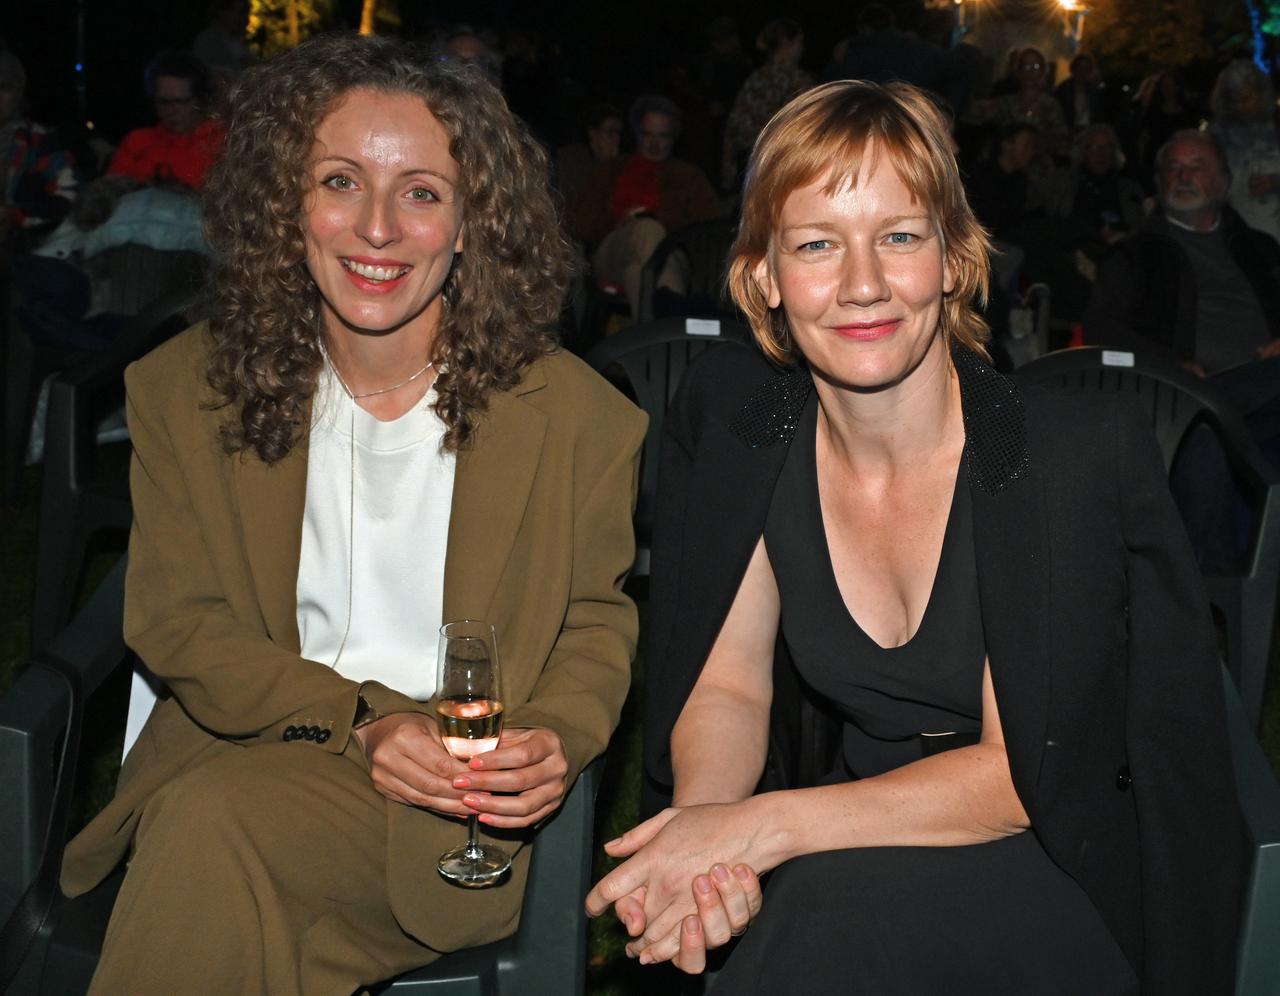 Die Schauspielerin Sandra Hüller (r.) und die Regisseurin Annika Pinske lächeln vor der Verleihung des "Hannelore-Elsner-Preises" beim 16.Fünf-Seen-Film Festival am Seebad in Starnberg.